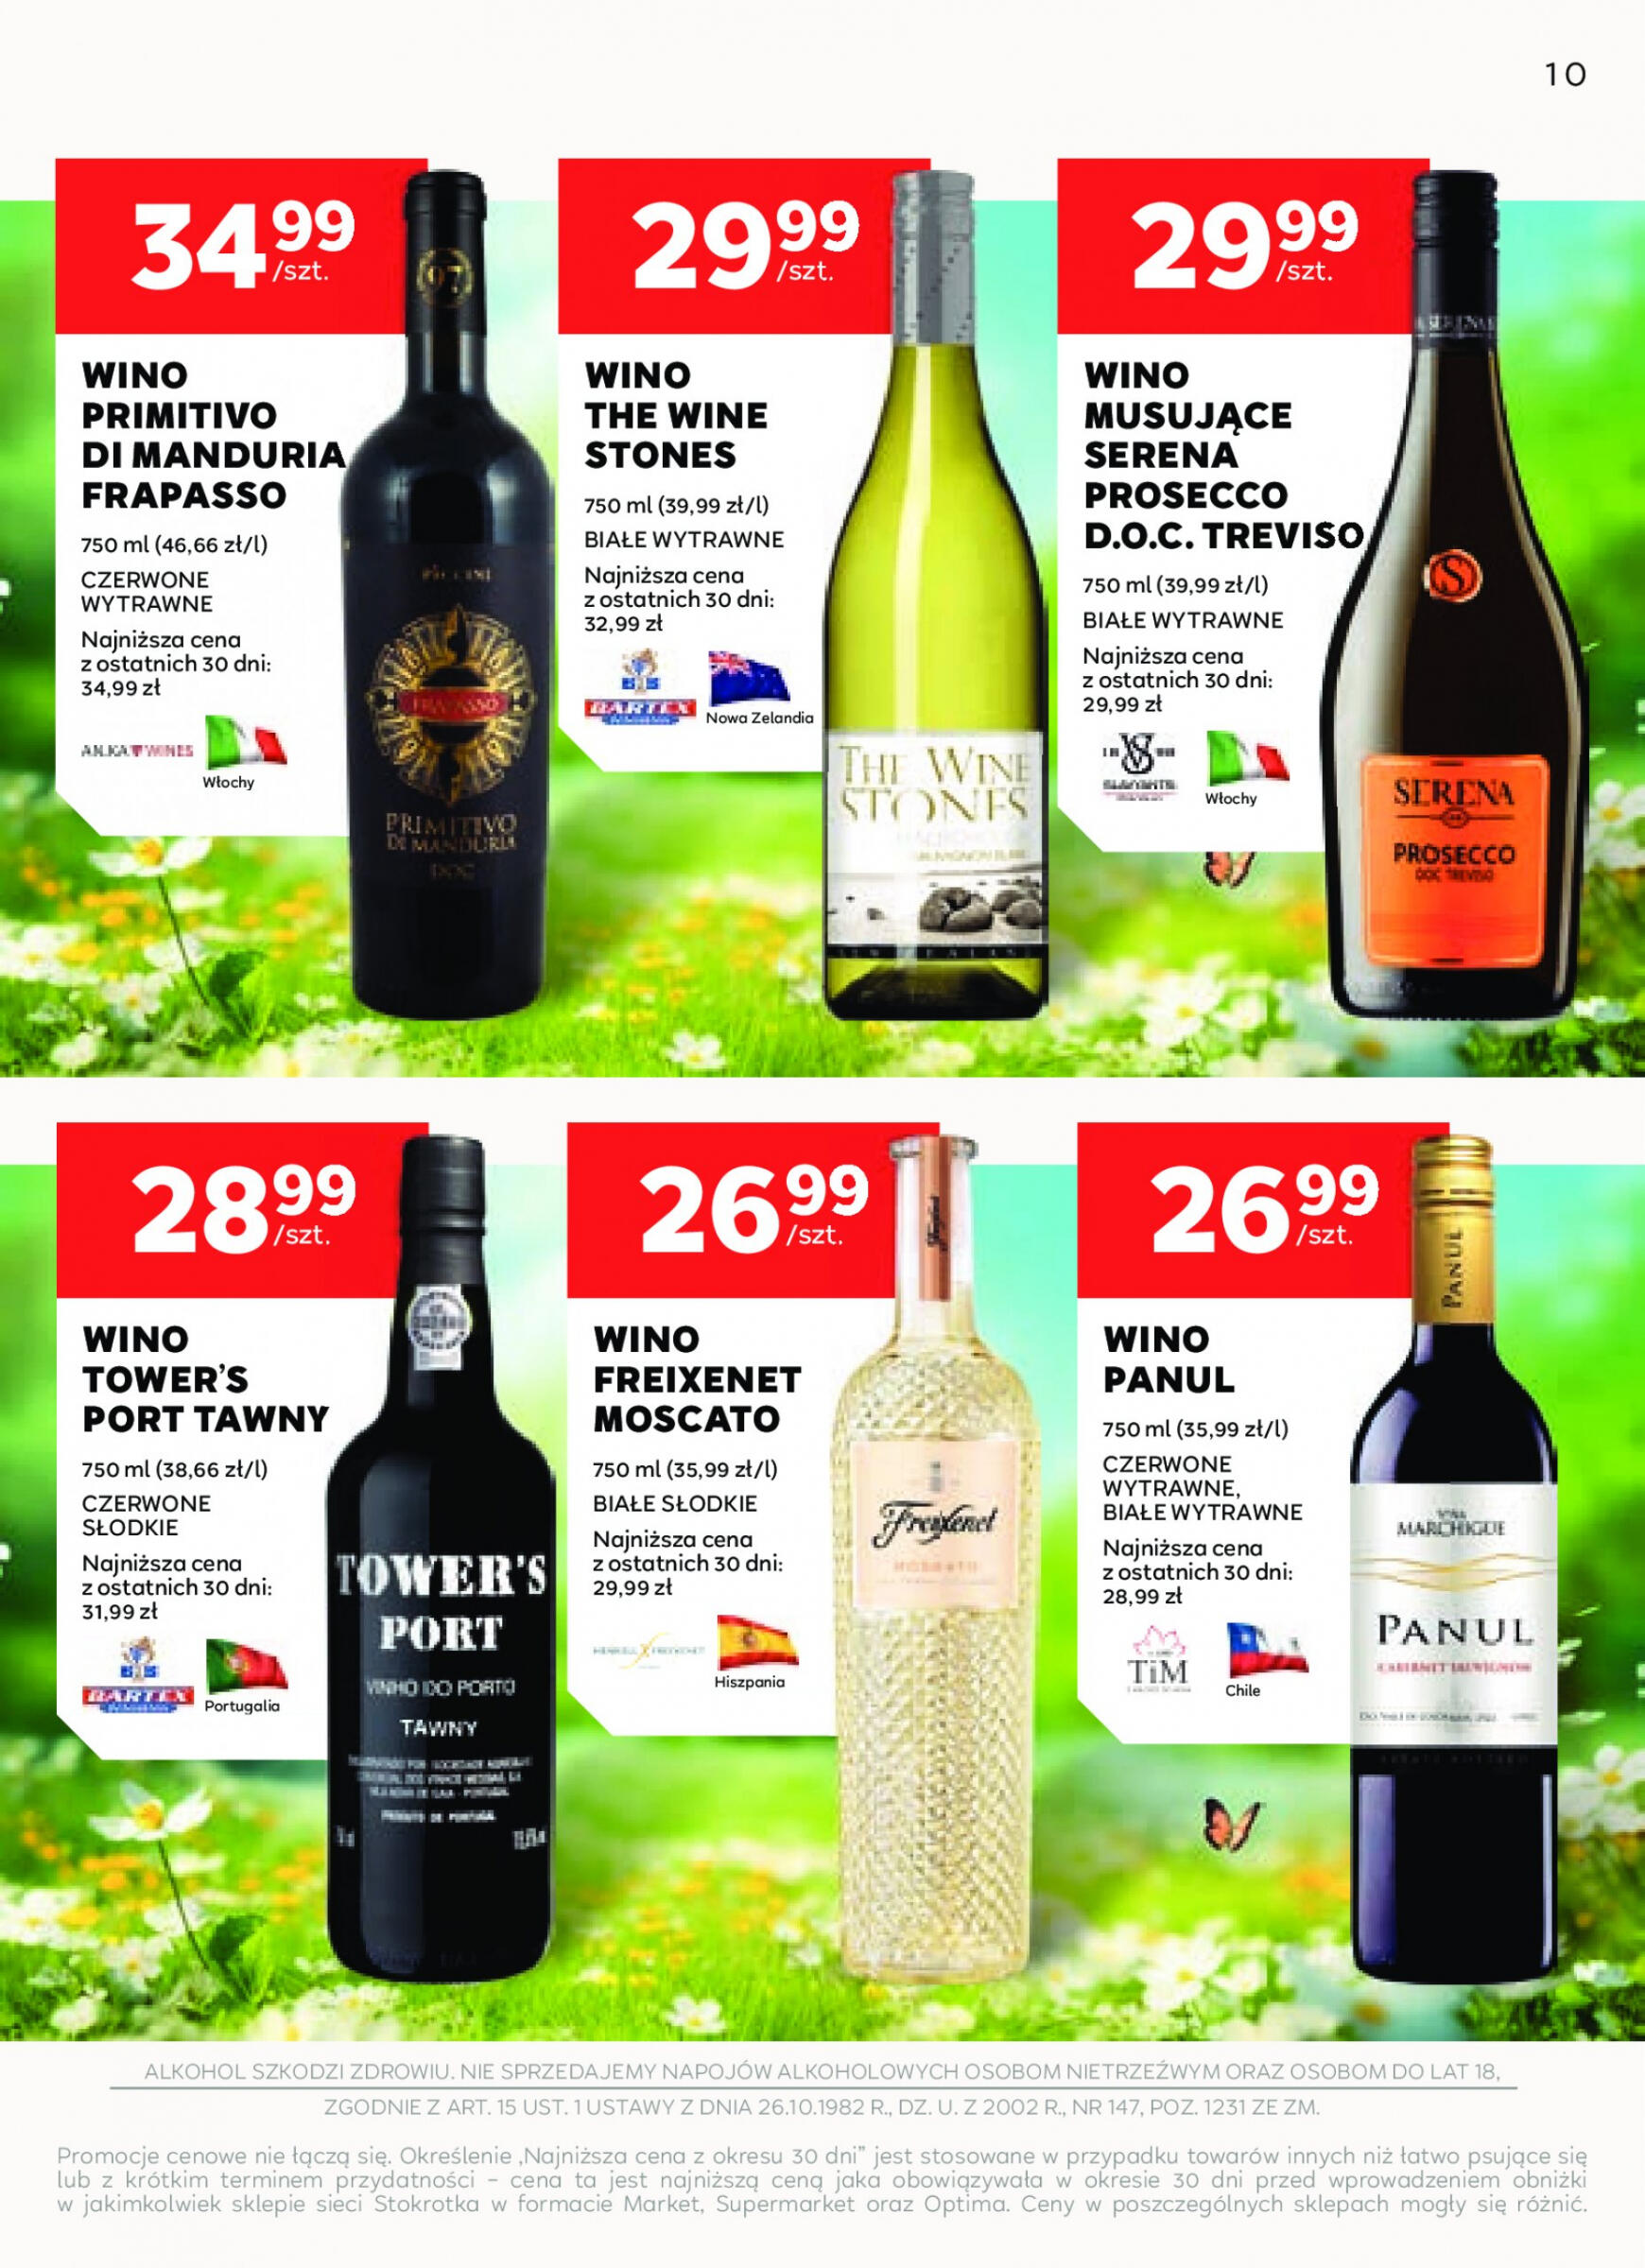 stokrotka - Stokrotka Supermarket - Oferta alkoholowa gazetka aktualna ważna od 25.04. - 22.05. - page: 10